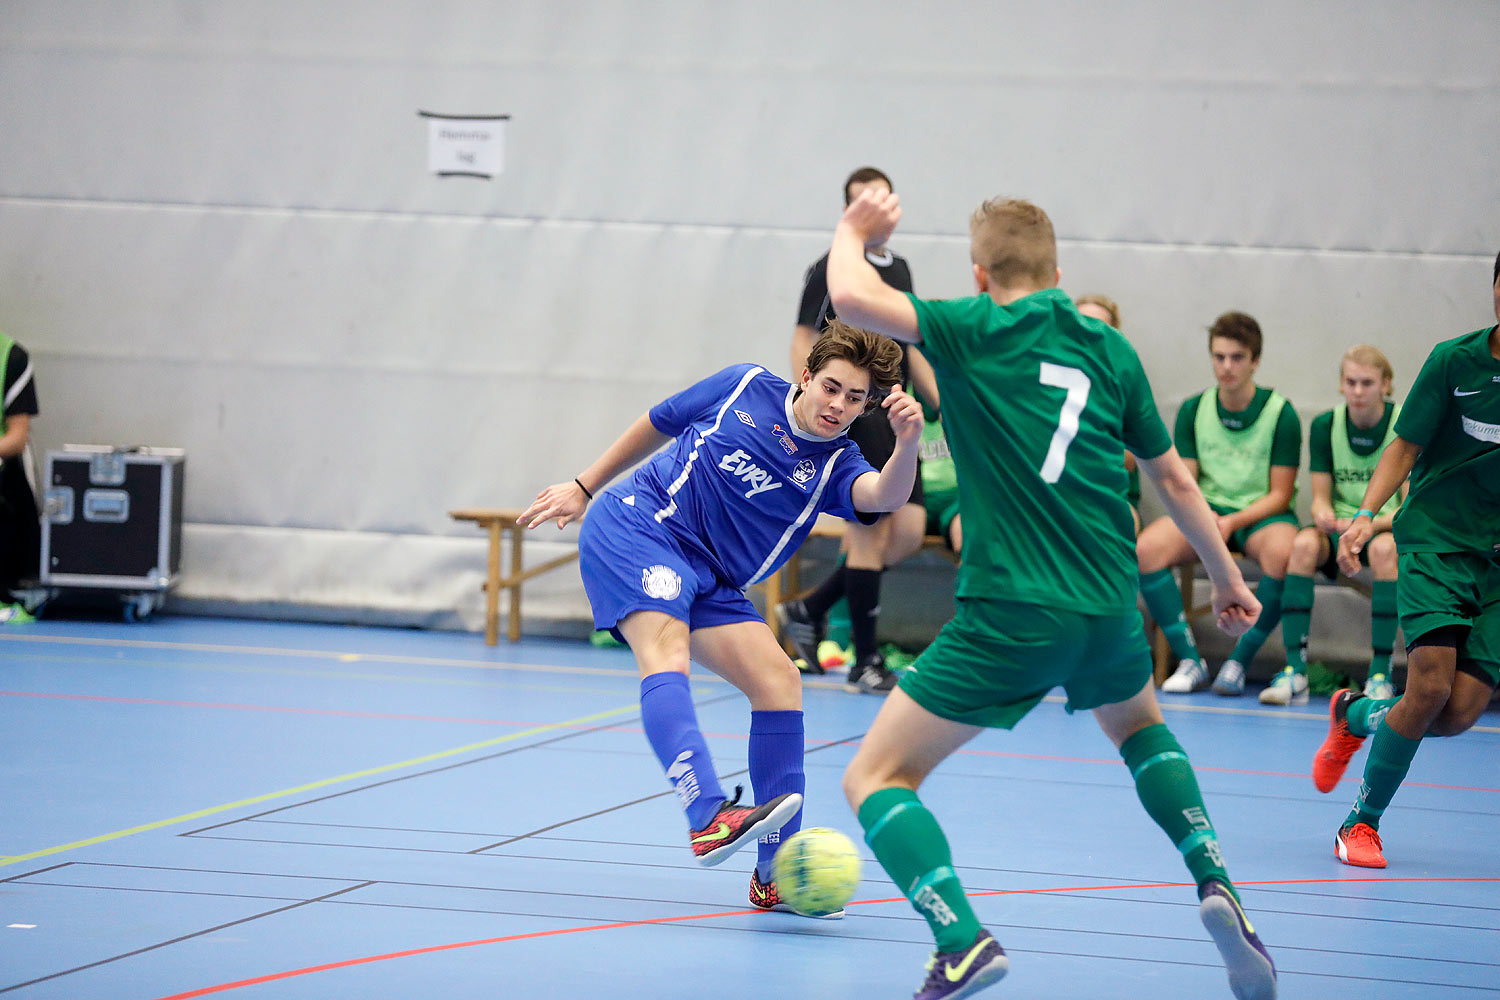 Skövde Futsalcup Herrjuniorer Våmbs IF-IF Hallby Fotboll,herr,Arena Skövde,Skövde,Sverige,Skövde Futsalcup 2016,Futsal,2016,142301